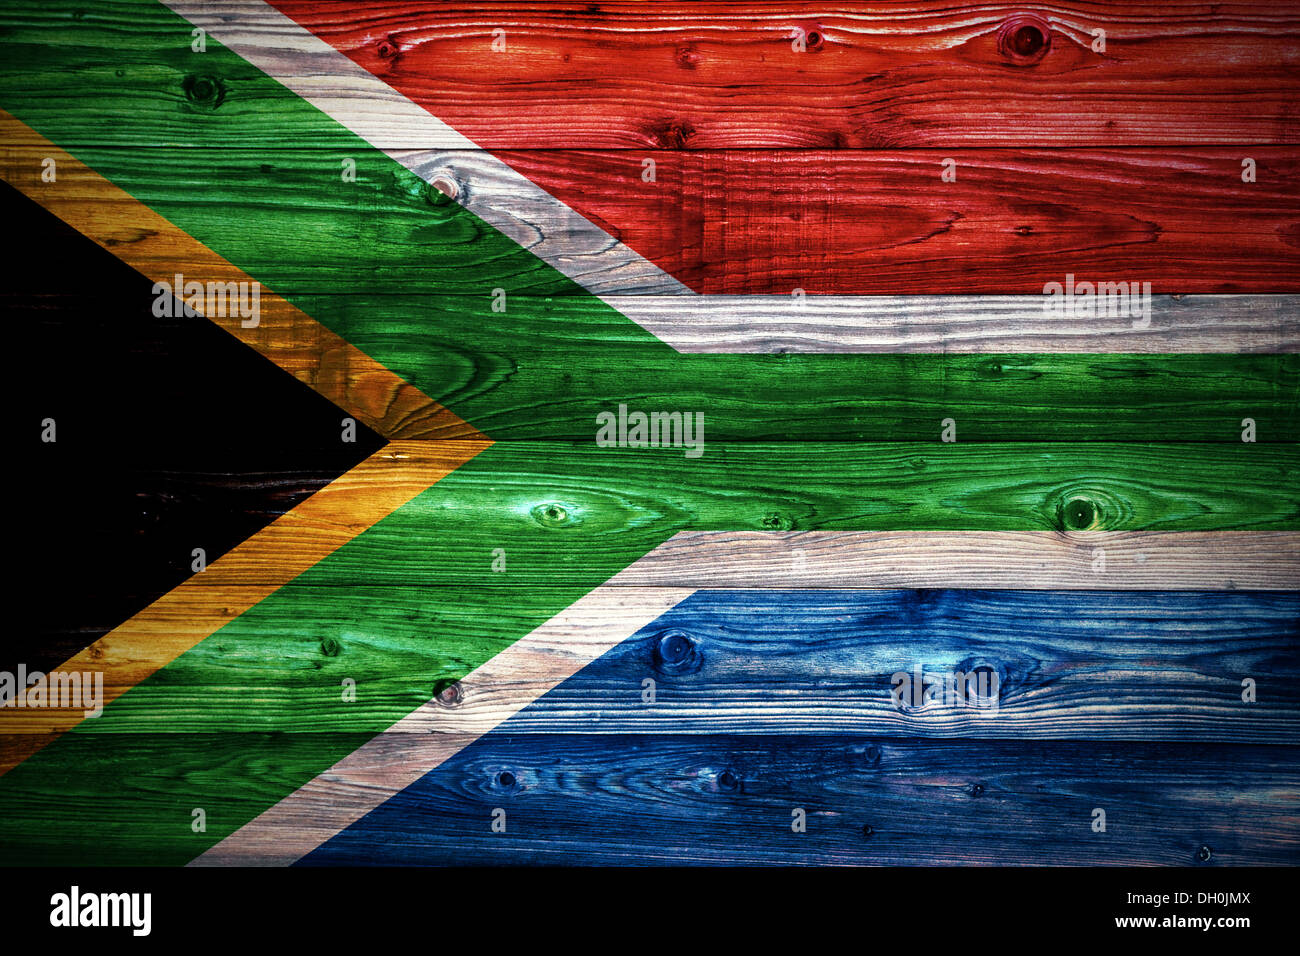 République d'Afrique du Sud drapeau sur une surface en bois naturel, close-up Banque D'Images